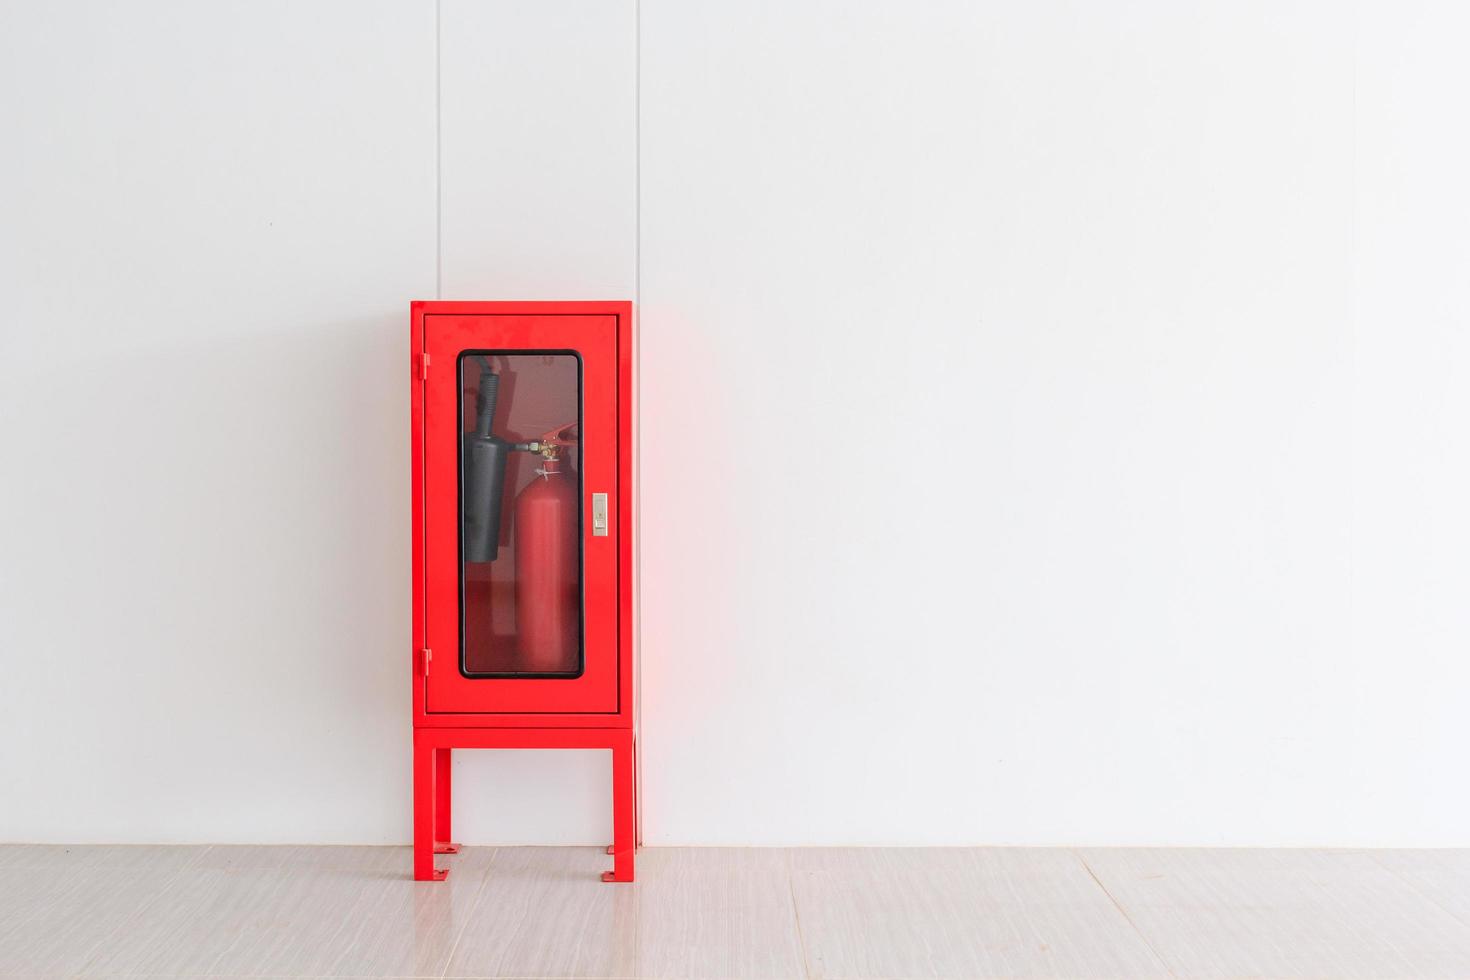 Feuerlöscher im roten Schrank foto